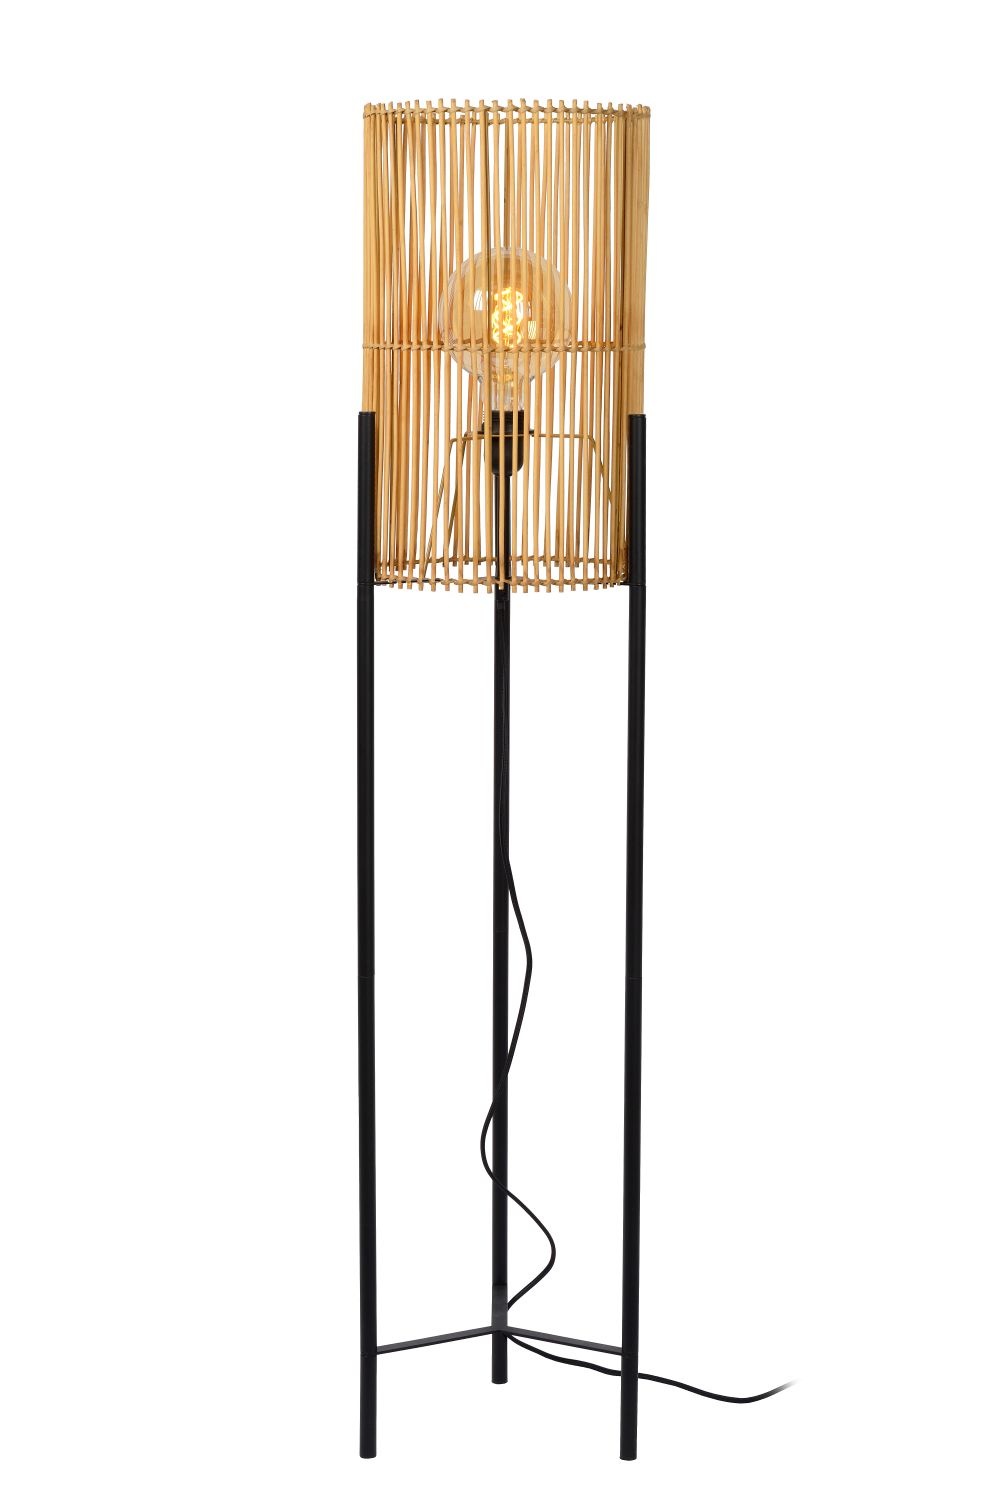 Skandinavische Stehlampe zylindrisch Holz schwarz mit hellem E27 